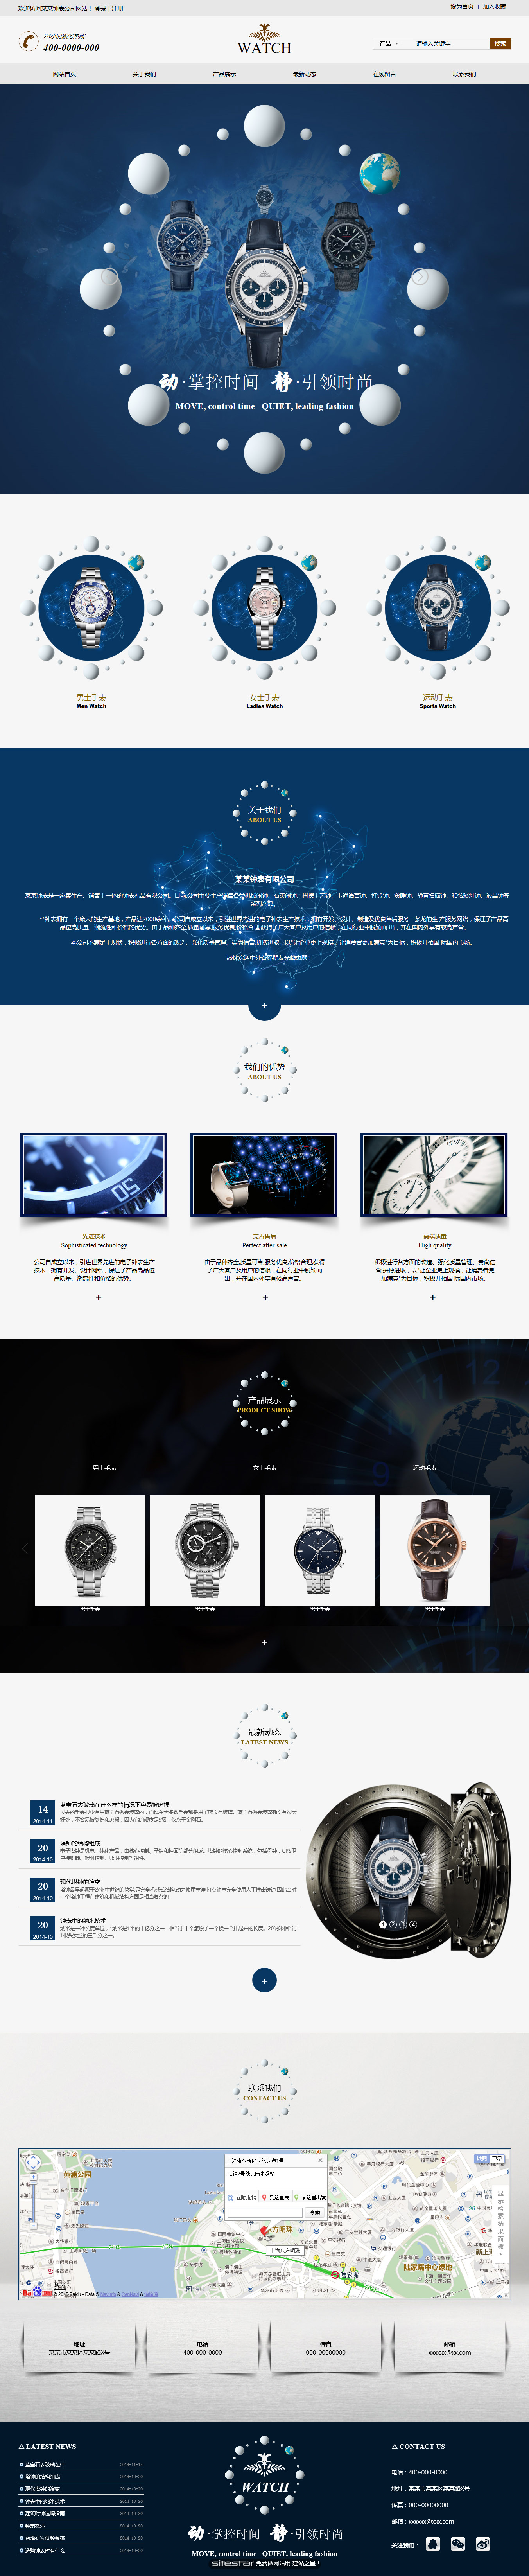 钟表网站模板-watch-201